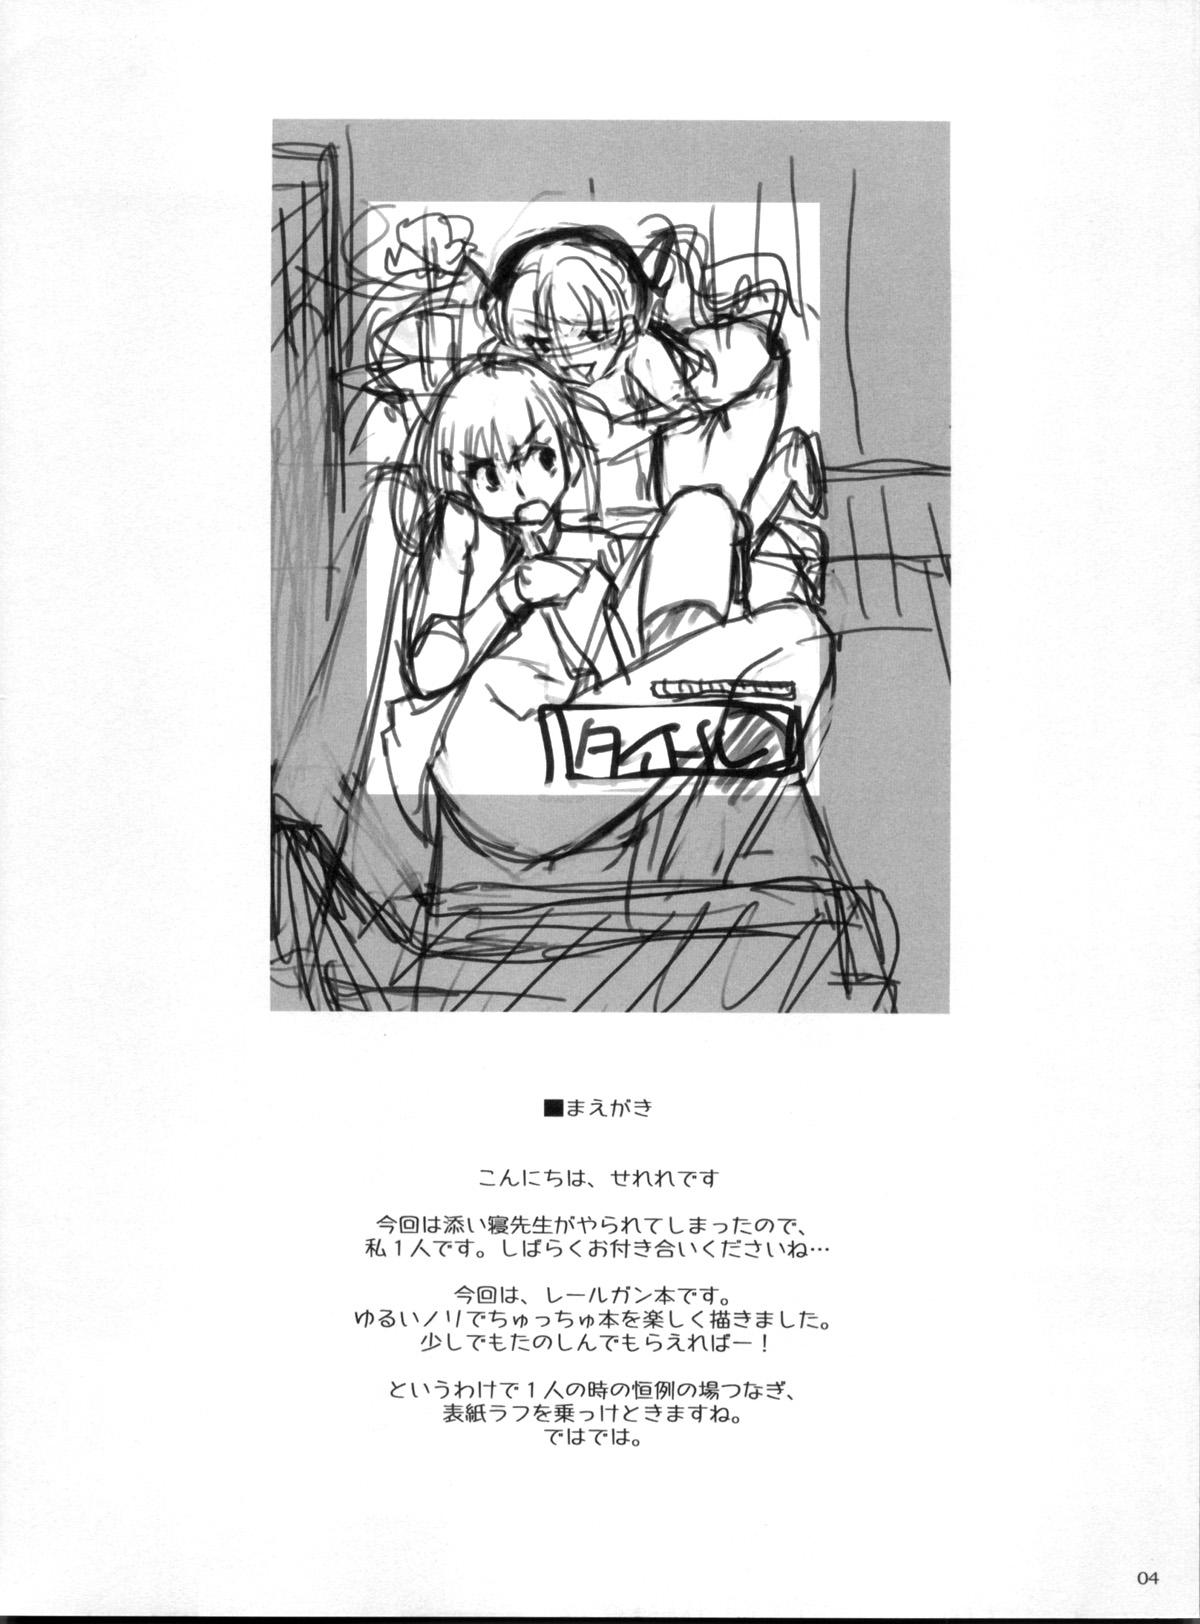 Rub Desu no!! - Toaru kagaku no railgun Classy - Page 4